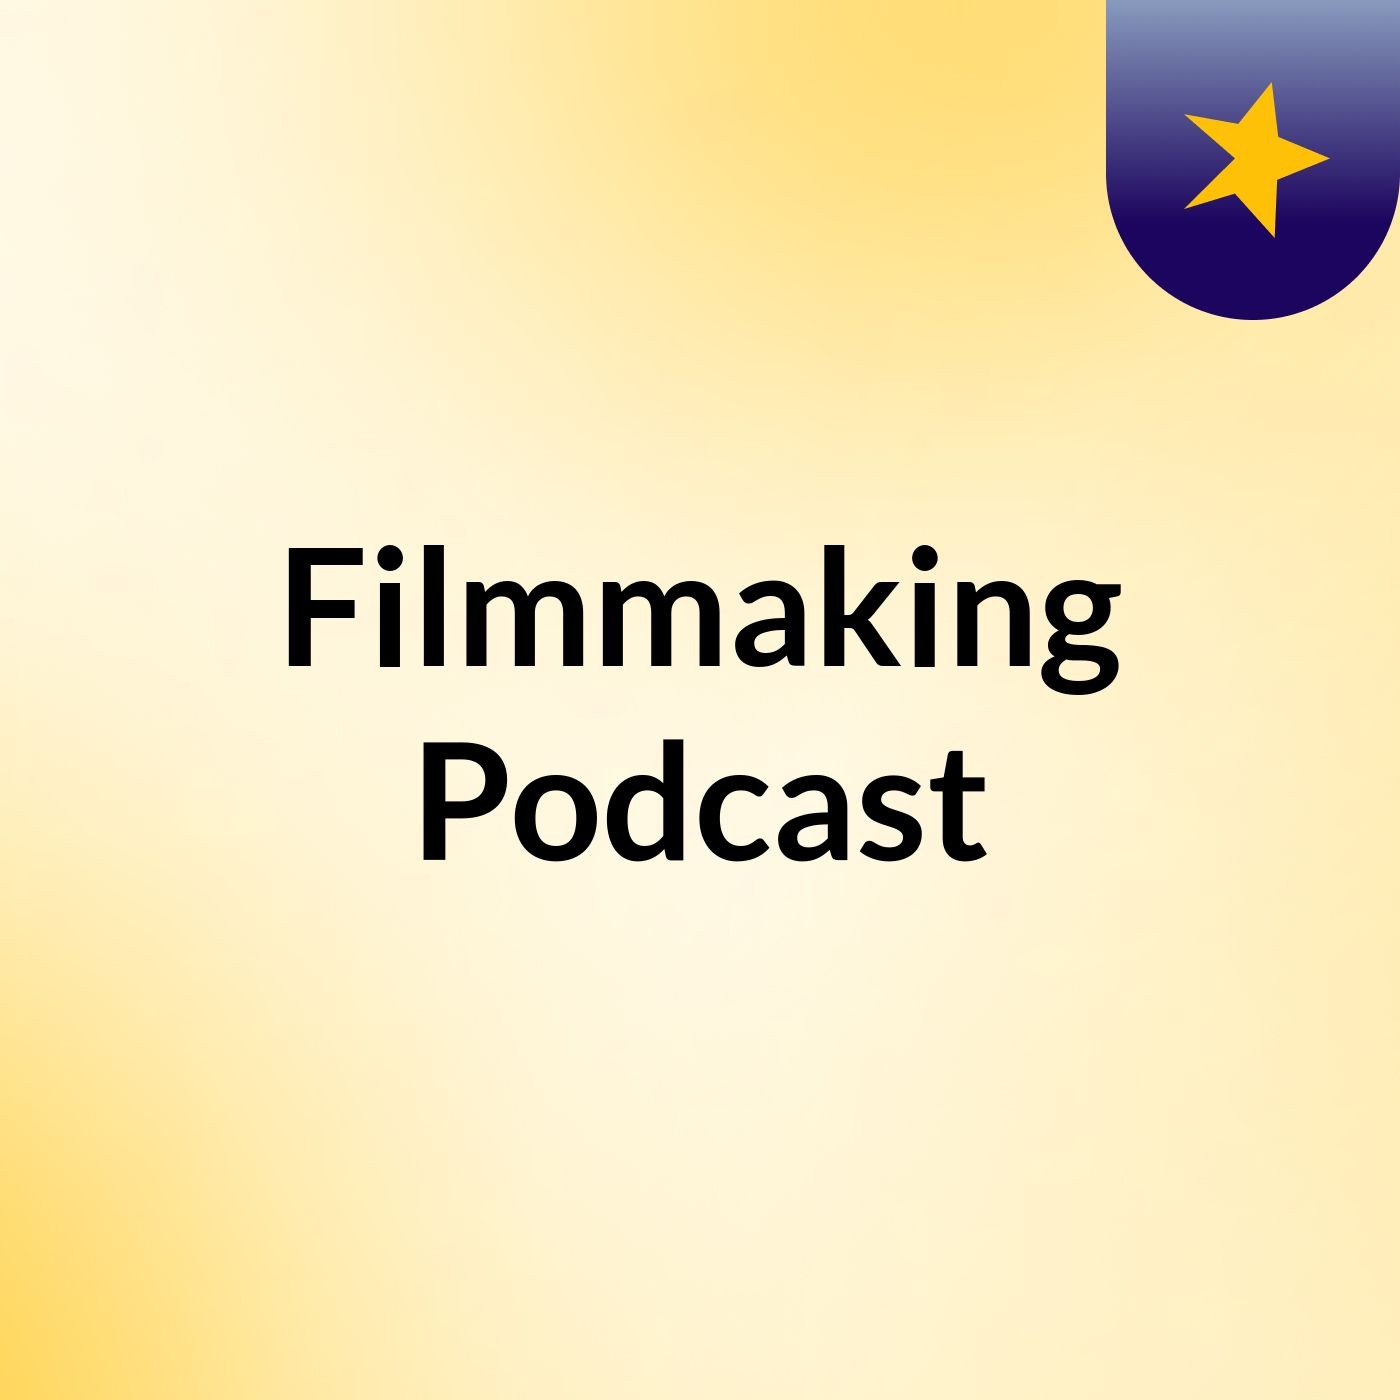 Episode 2 - Filmmaking Podcast